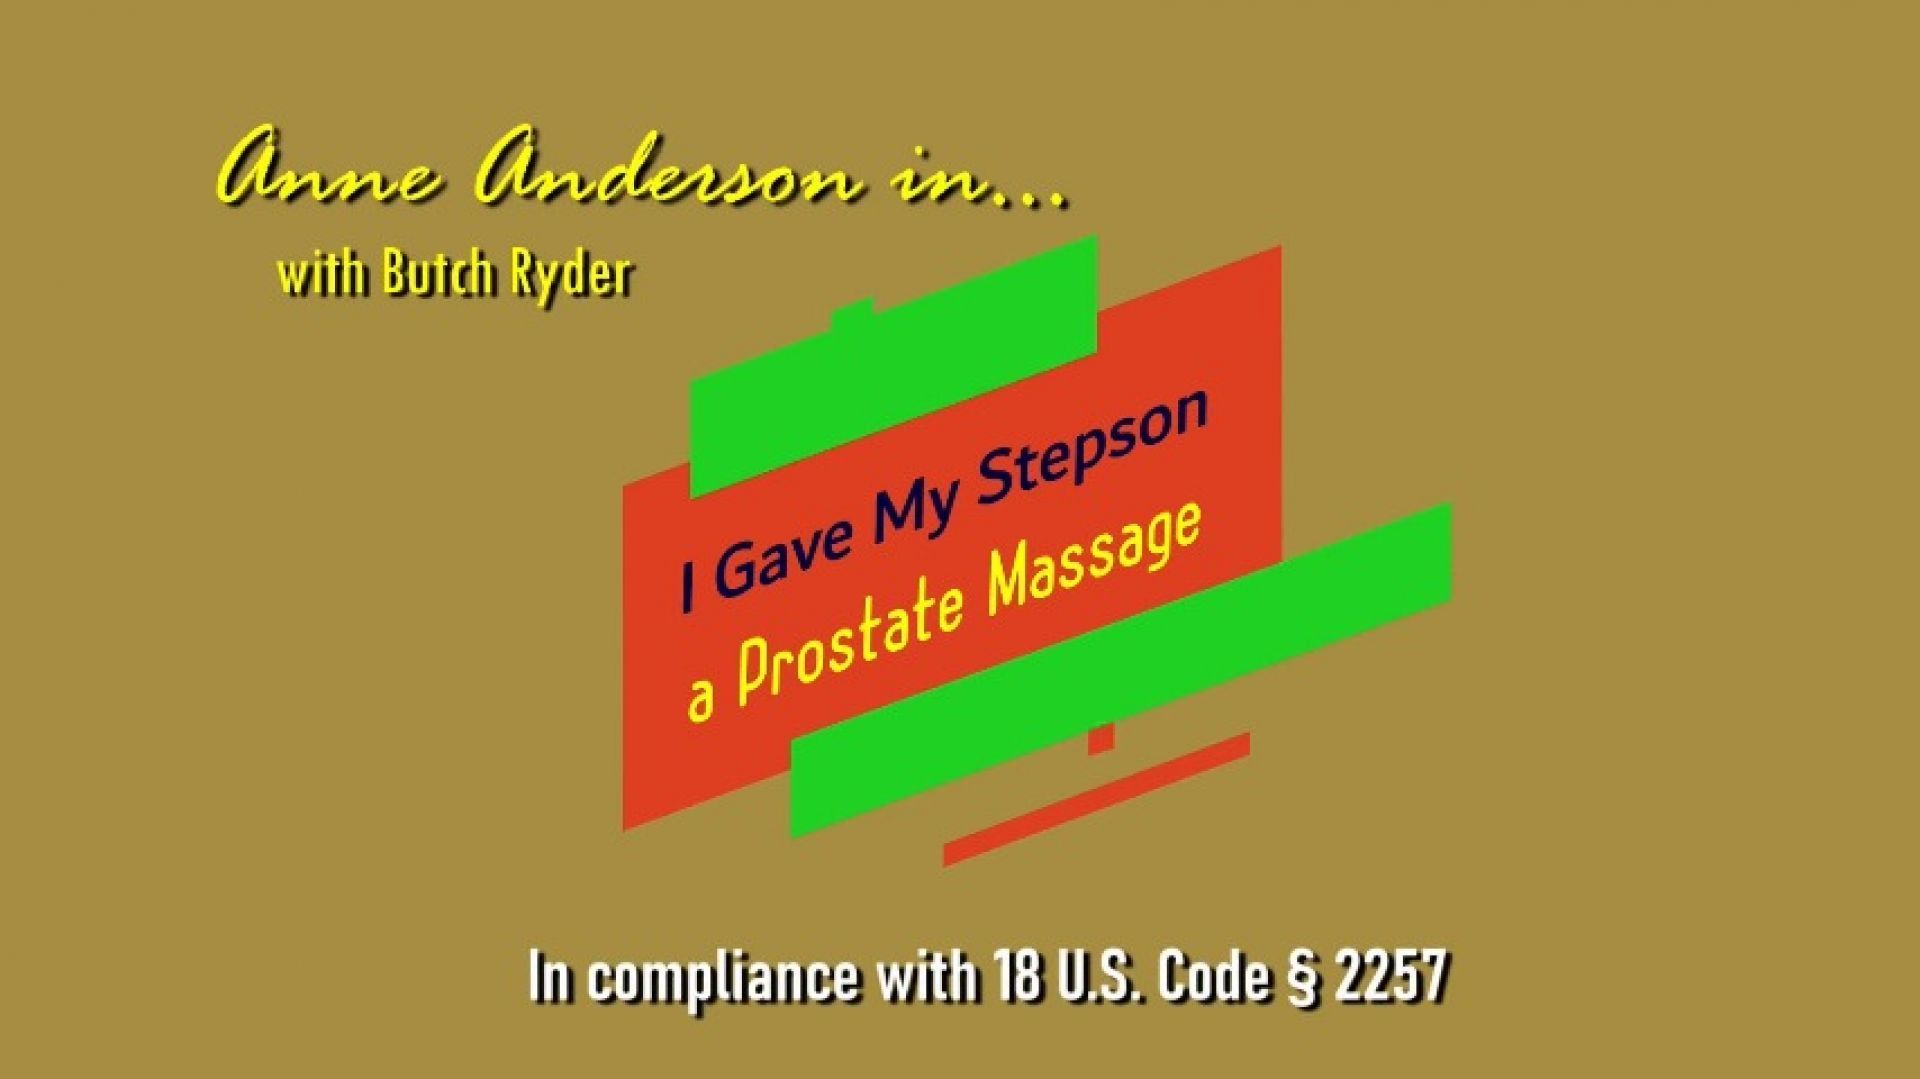 I gave my step-son a prostate massage